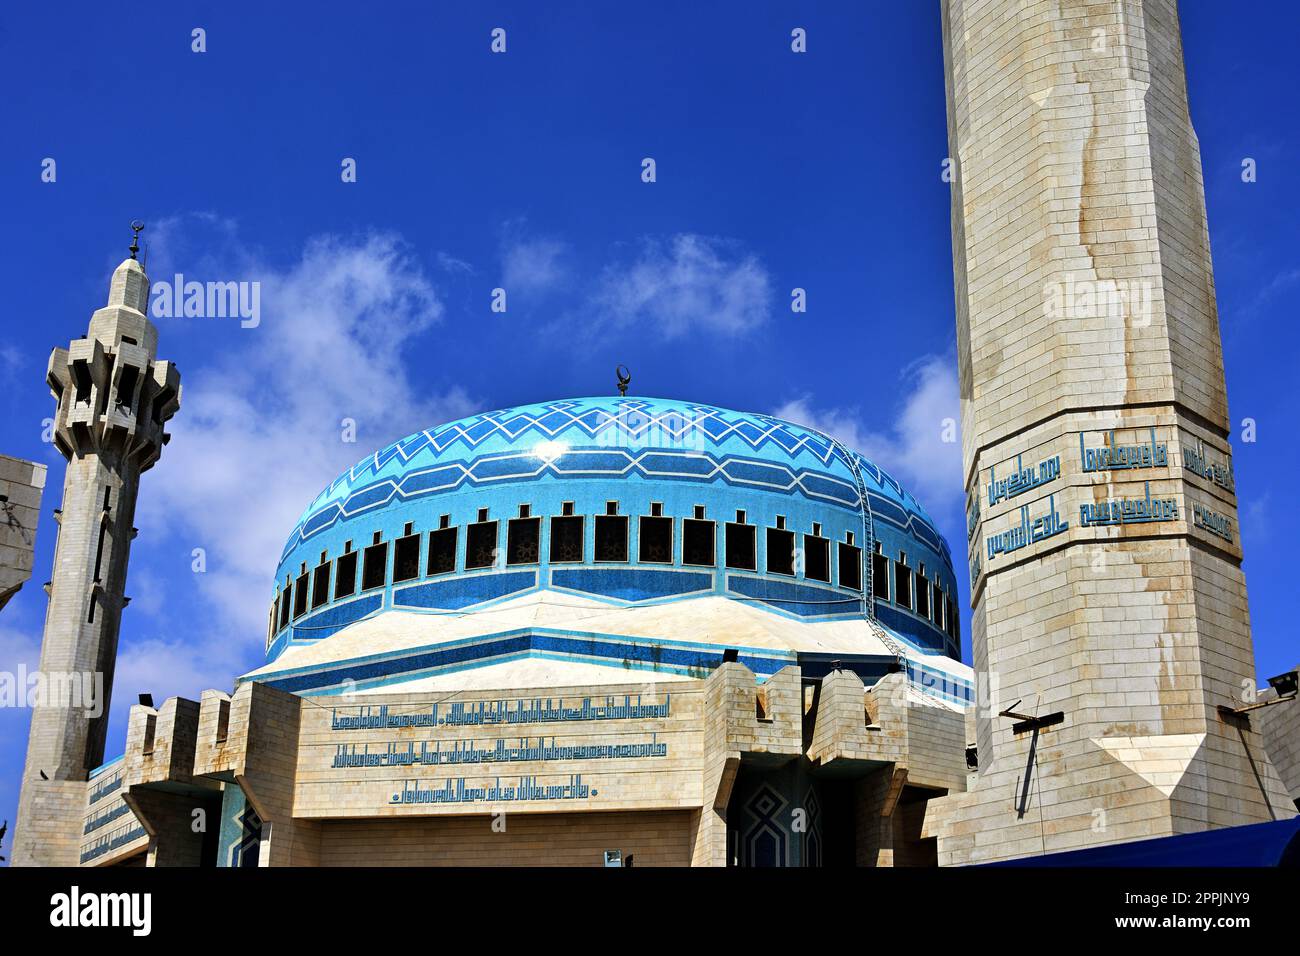 Mosquée du roi Abdallah I à Amman, en Jordanie. Également connue sous le nom de mosquée bleue a été construite entre 1982 et 1989 à Amman, Jordanie, الأردن, Royaume hachémite Banque D'Images